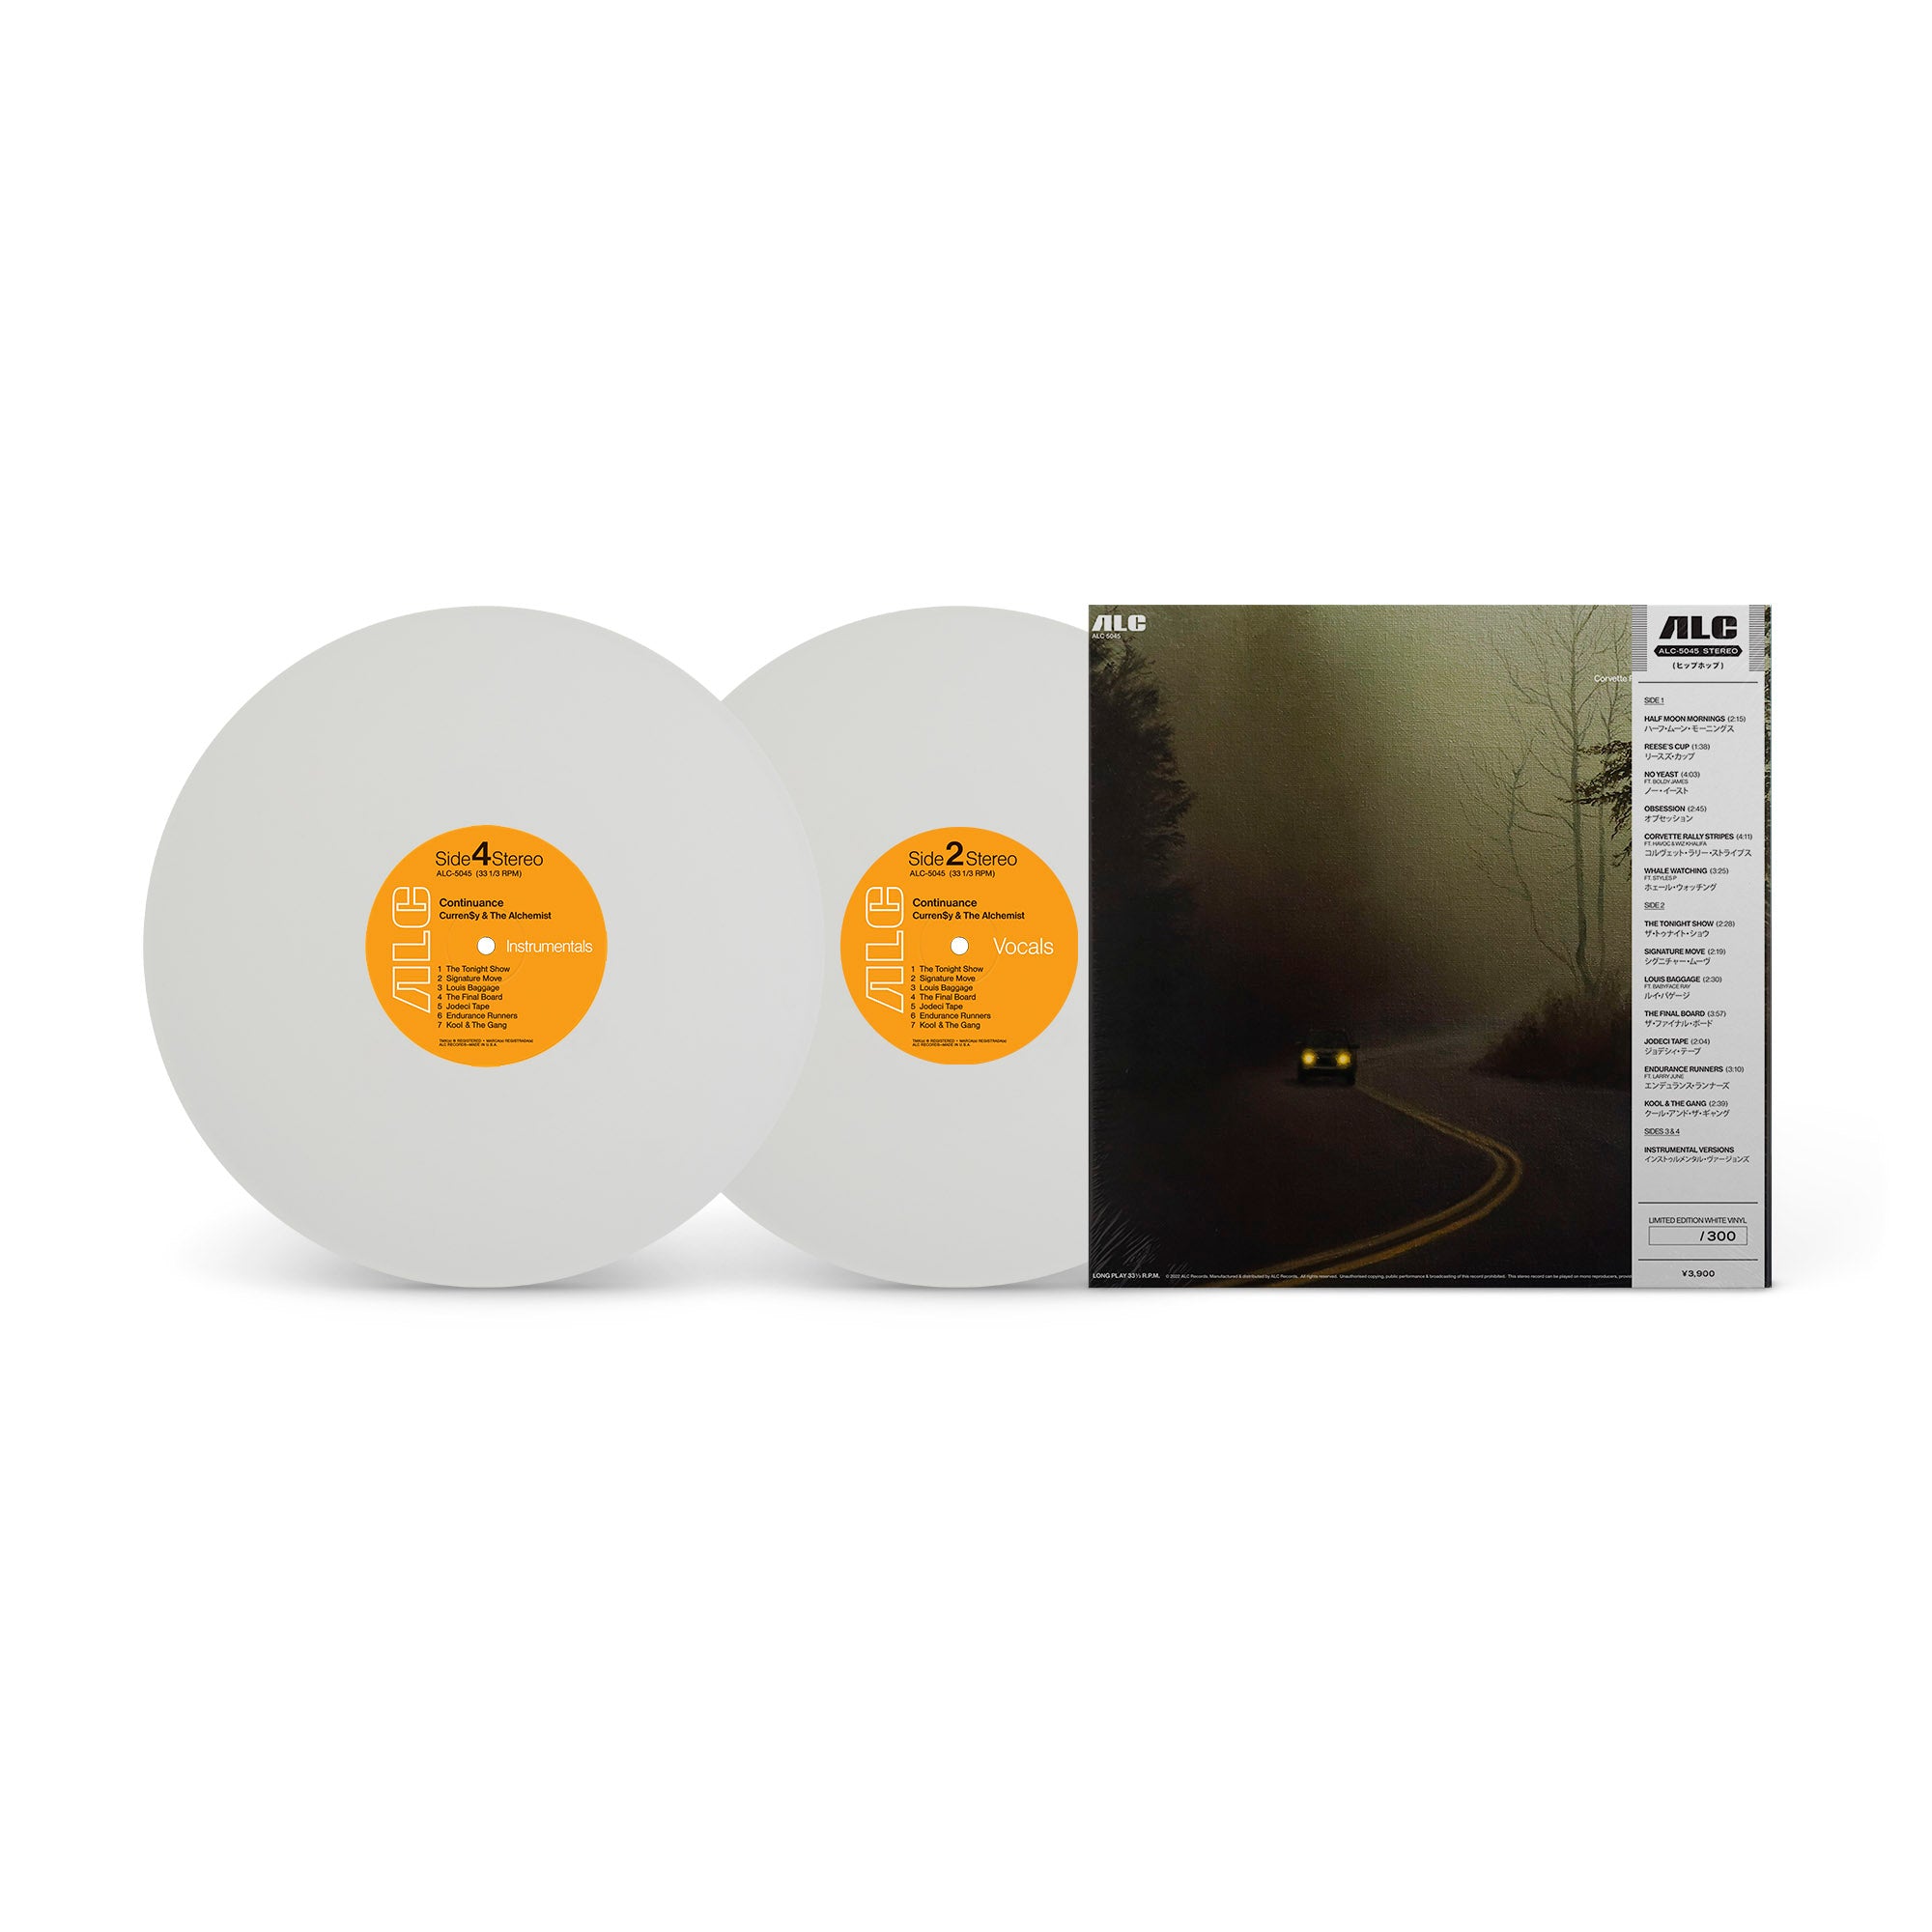 Continuance (2xLP - White Vinyl)